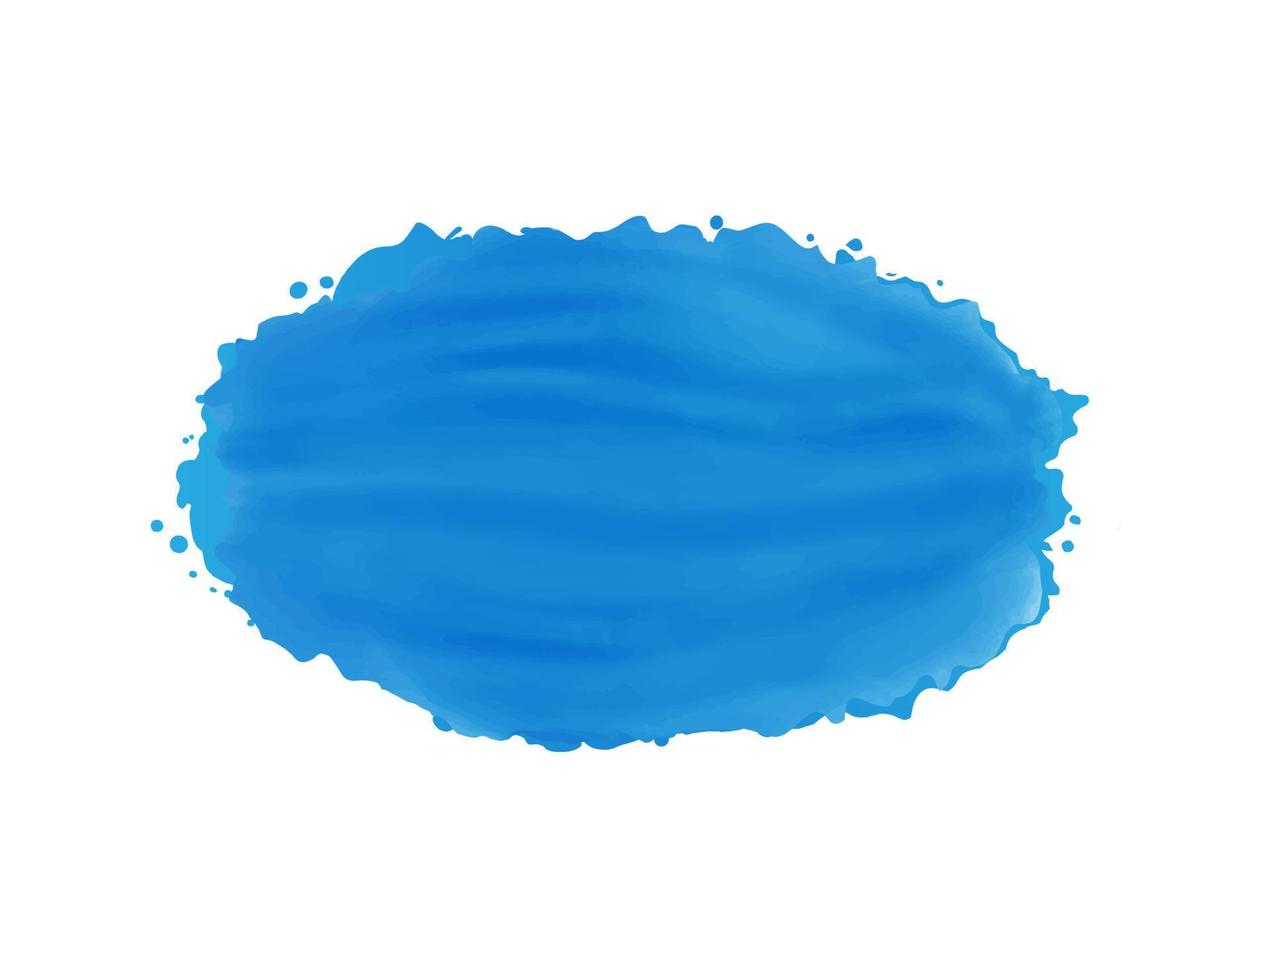 conception peinte moderne abstraite avec la couleur bleue. conception de vecteur aquarelle créative et élégante pour votre entreprise